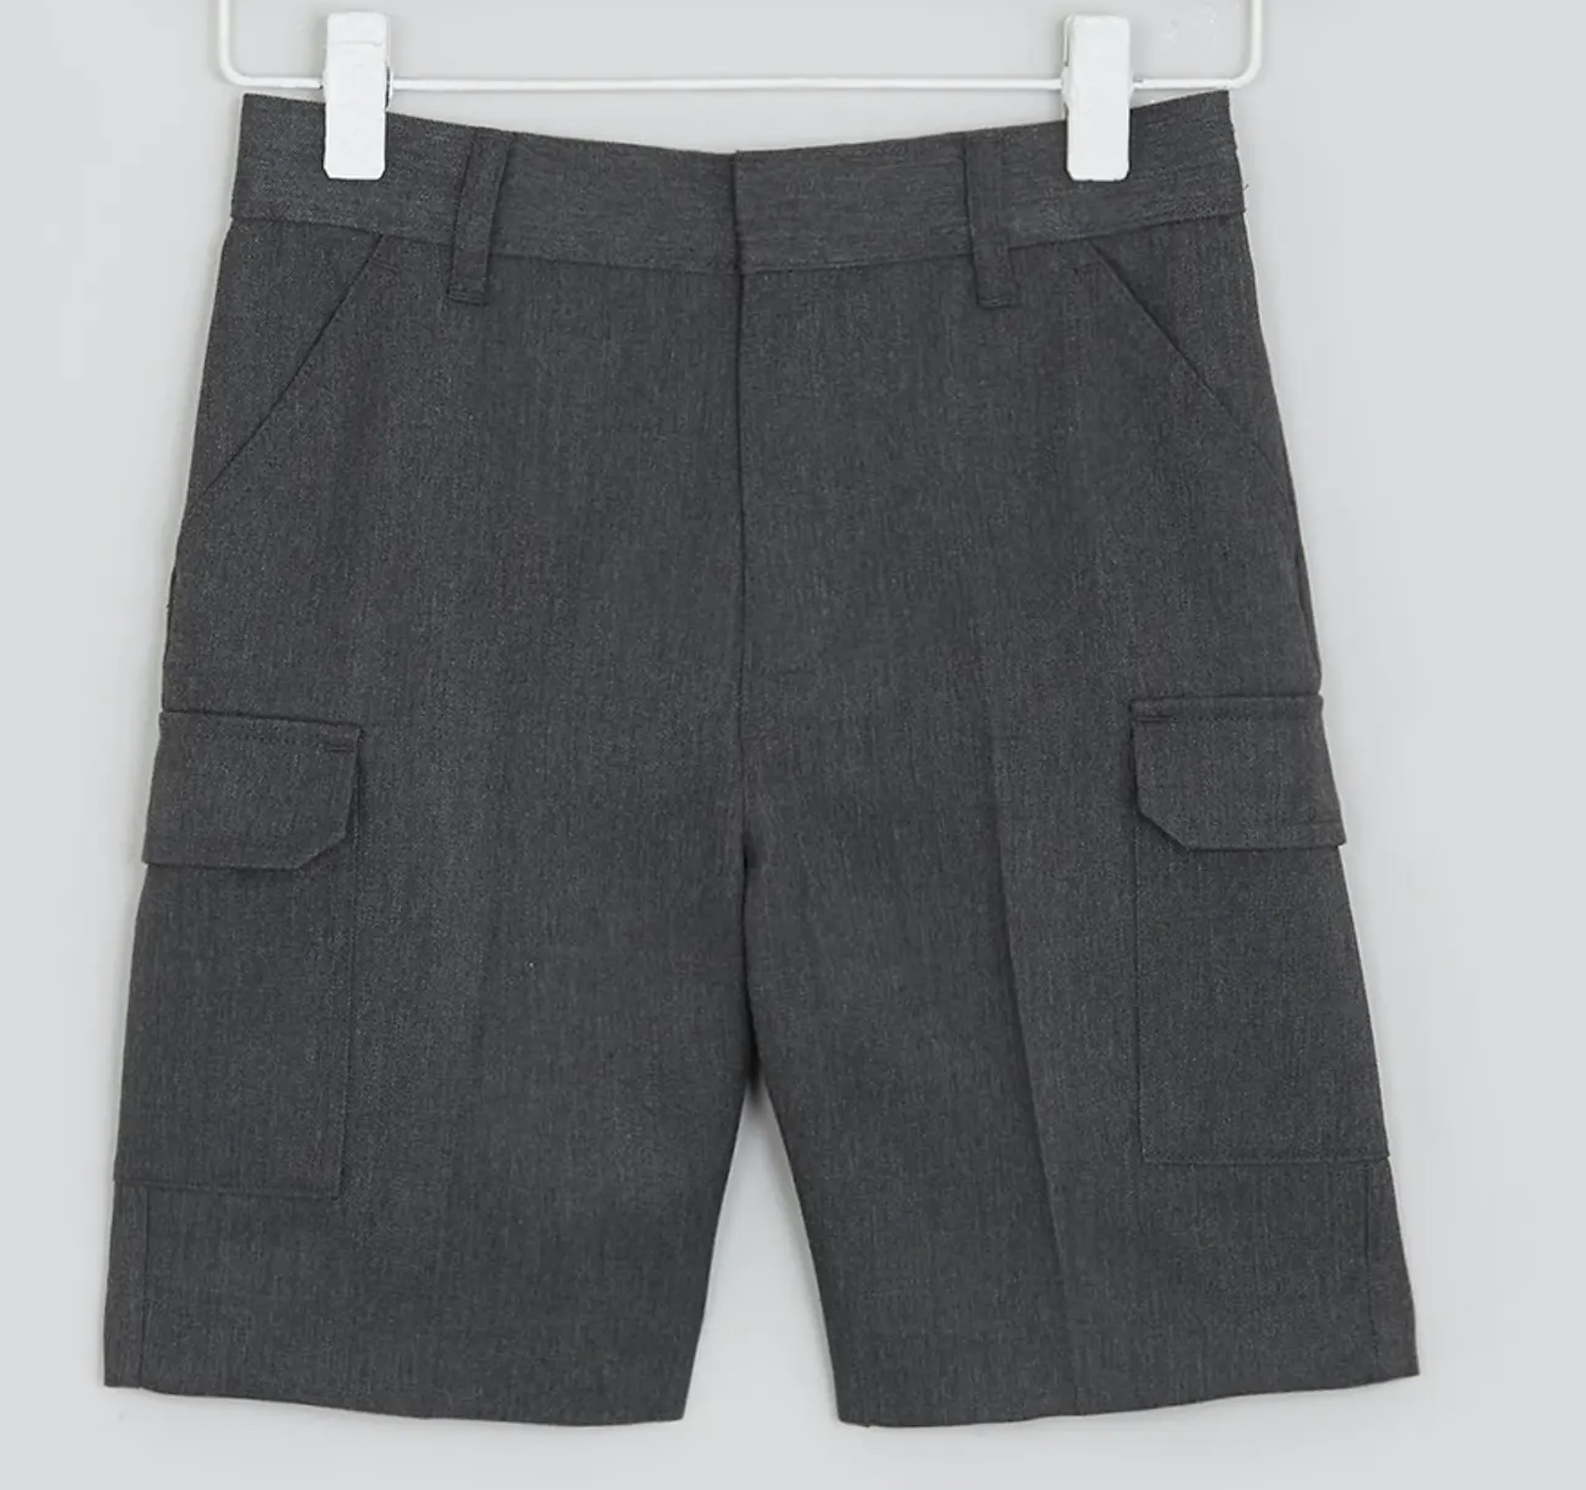 Boys' Dark Grey Cargo Shorts, Flat Front, Adjustable Waist, Four Pockets 6-7 Y